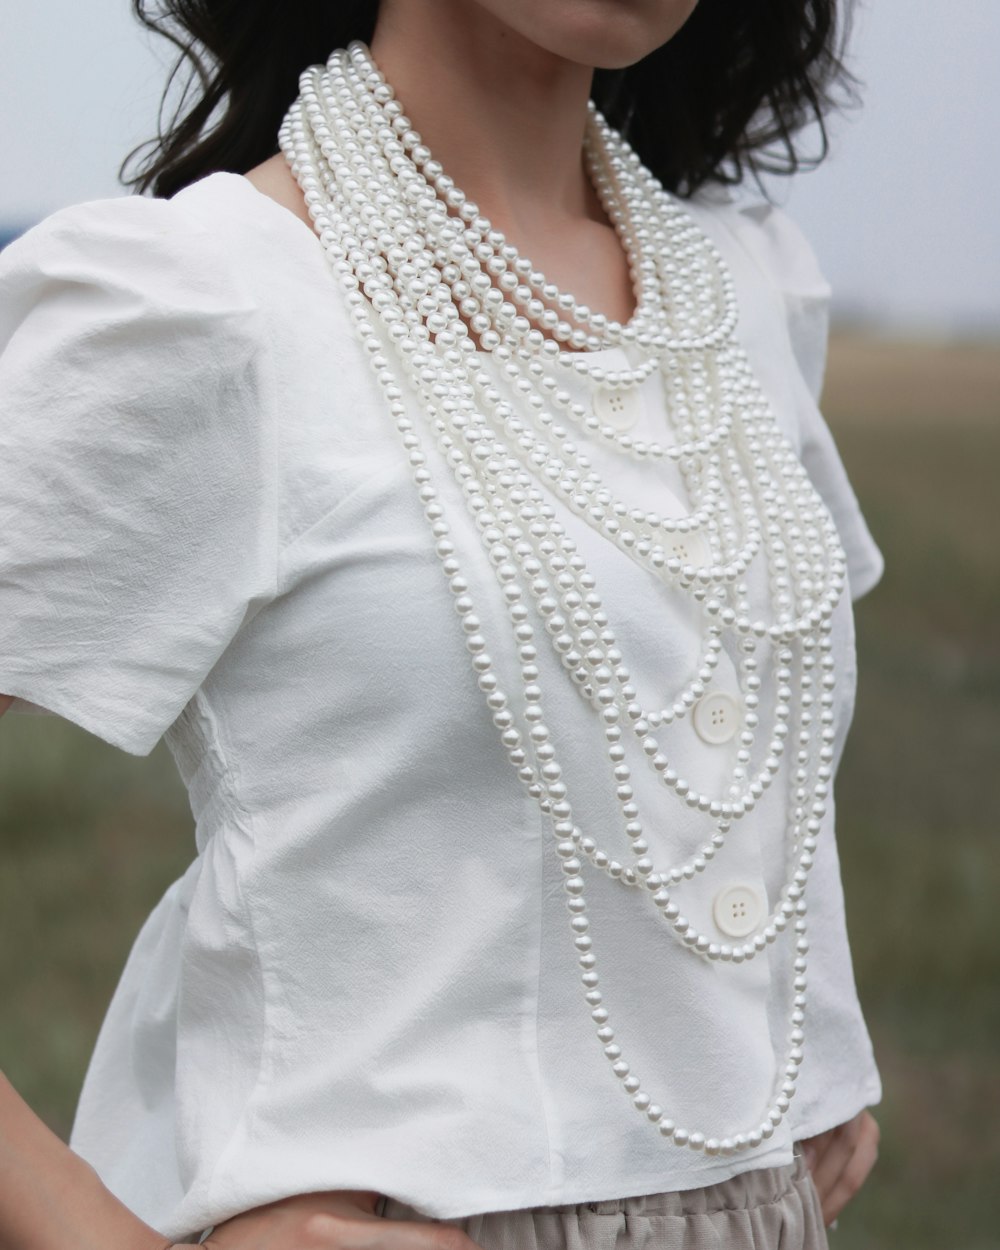 femme portant un chemisier blanc et un collier de perles blanches